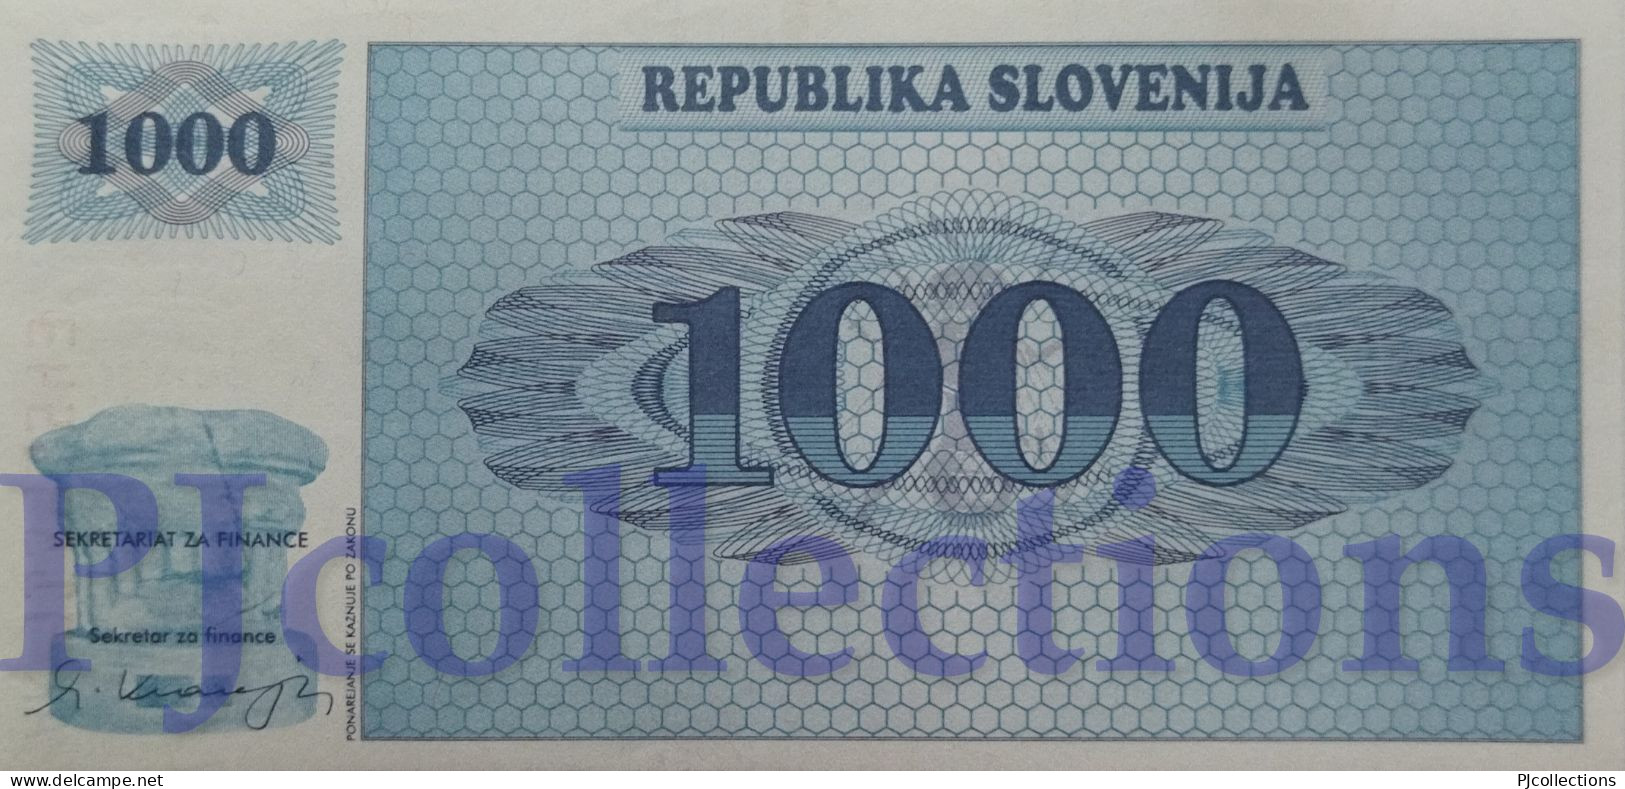 SLOVENIA 1000 TOLARJEV 1991 PICK 9a AU/UNC RARE - Slovénie